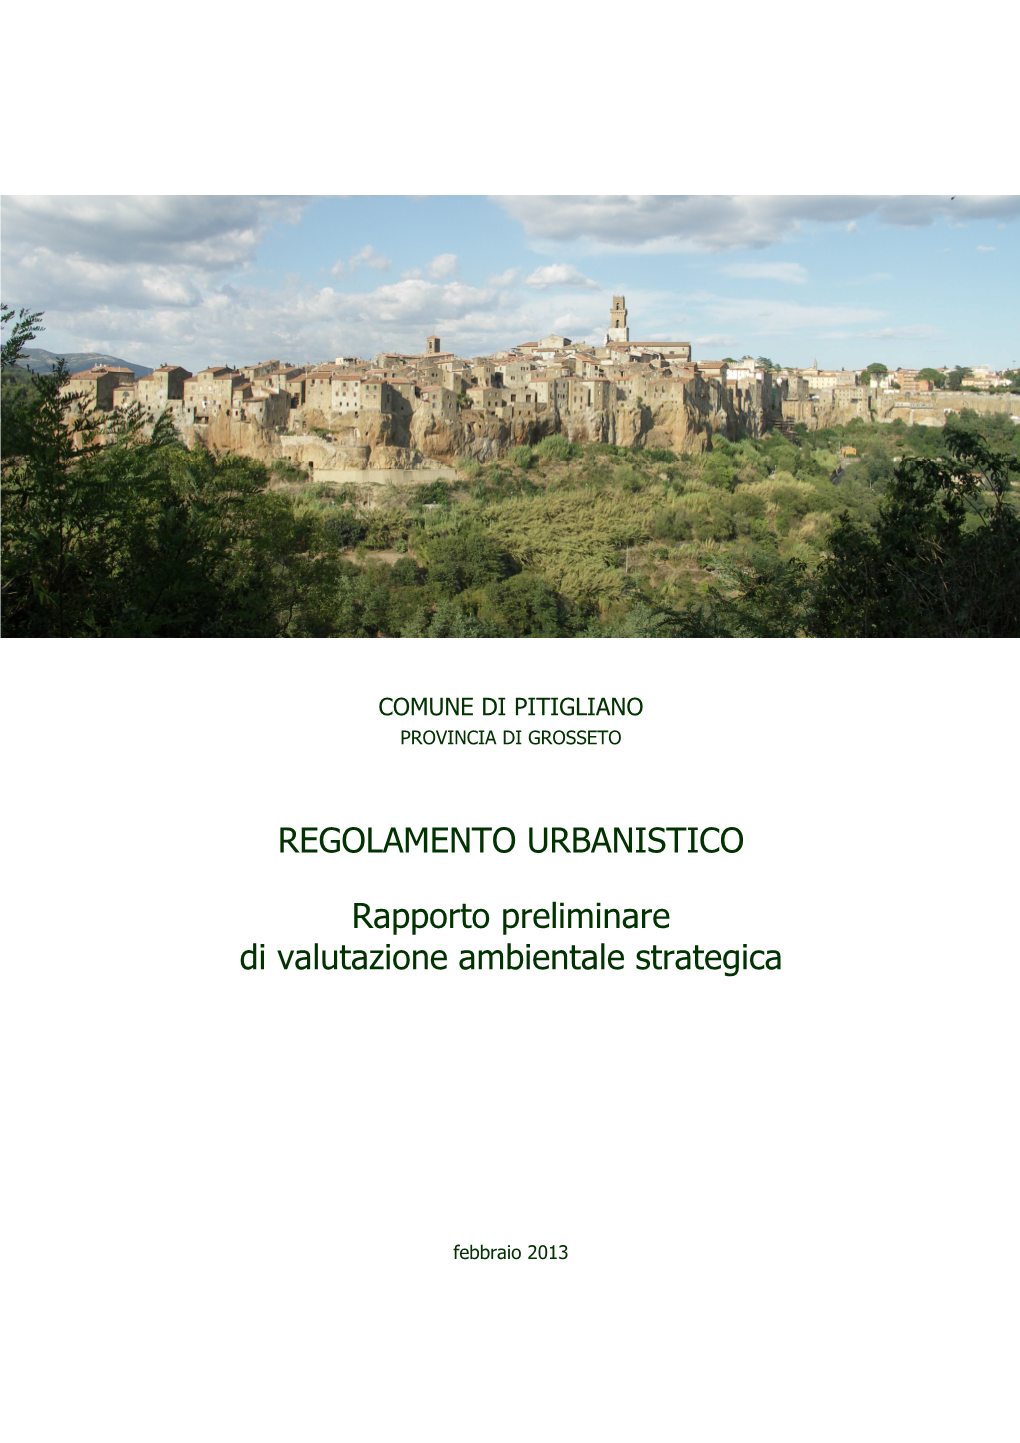 Regolamento Urbanistico Rapporto Preliminare Di Valutazione Ambientale Strategica